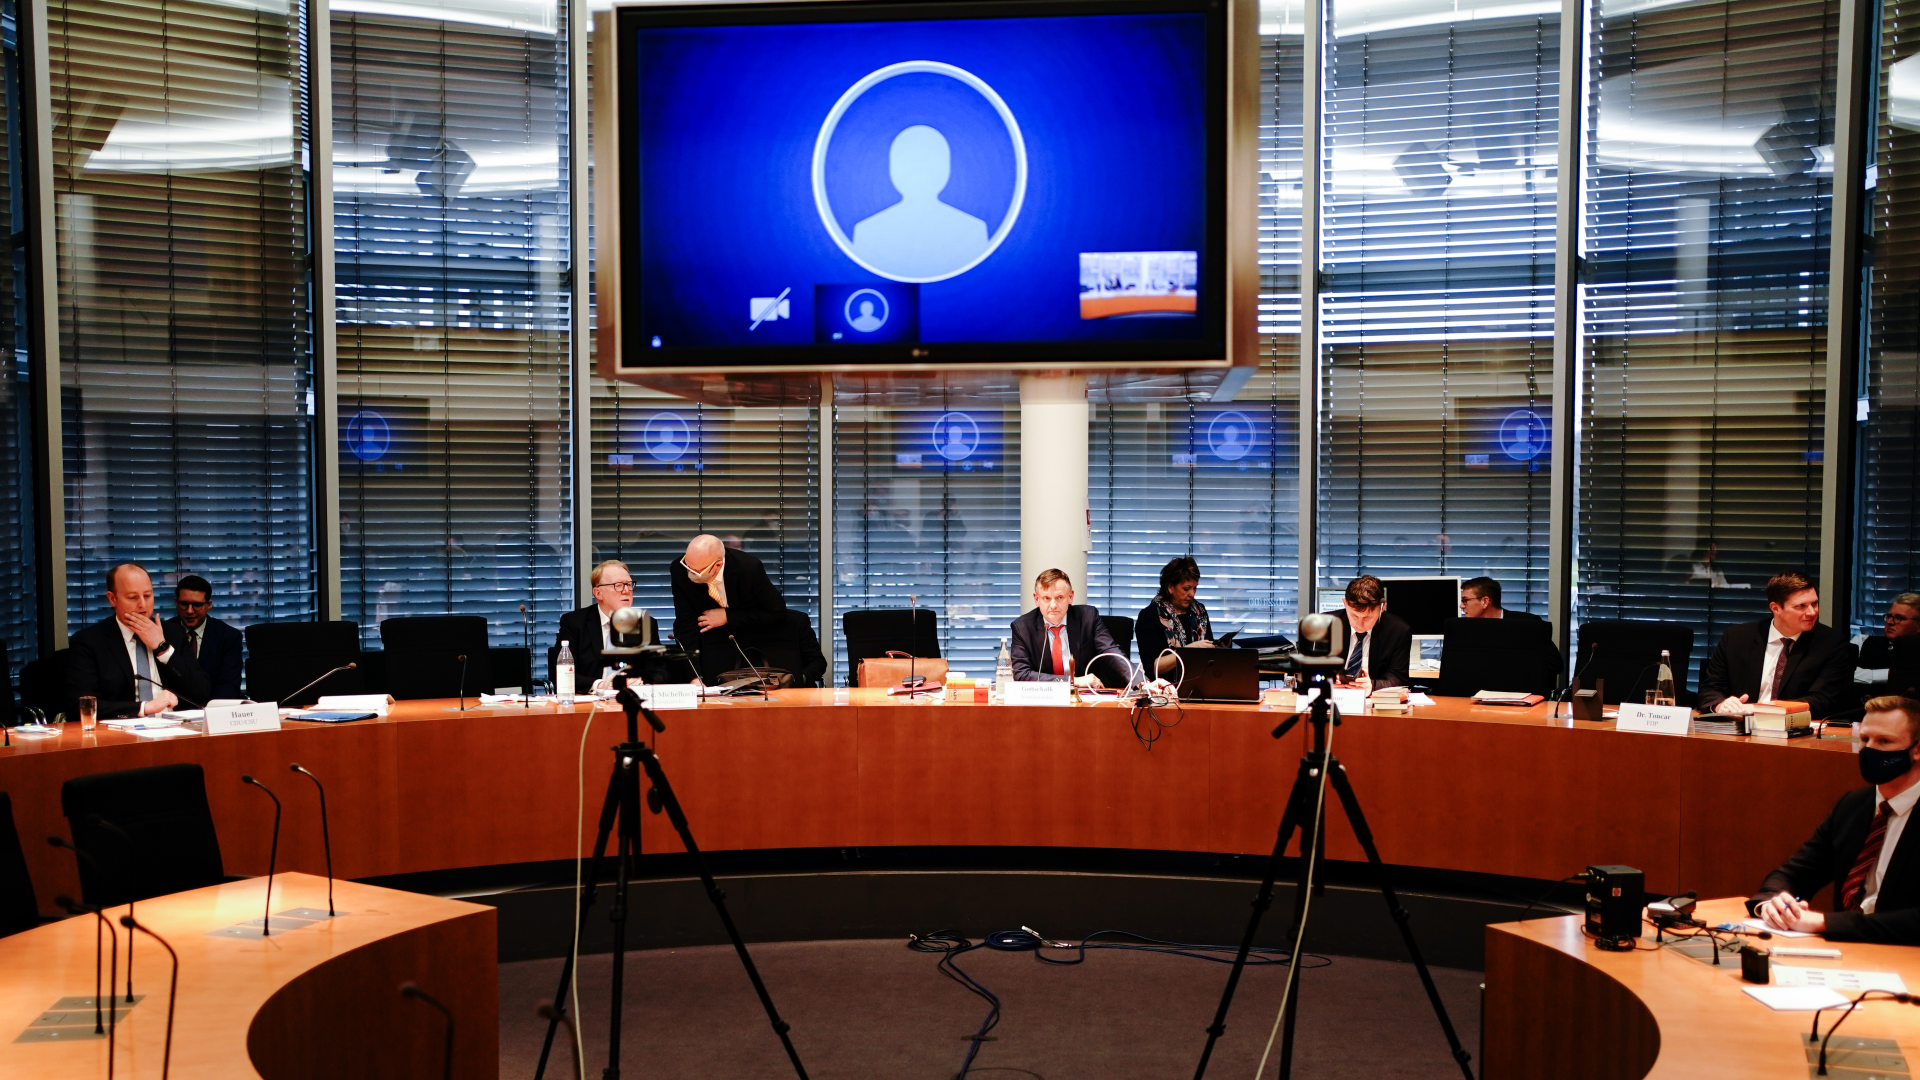 Das ist die Perspektive der Zeugen im Wirecard-Untersuchungsausschuss | Foto: picture alliance/dpa | Kay Nietfeld